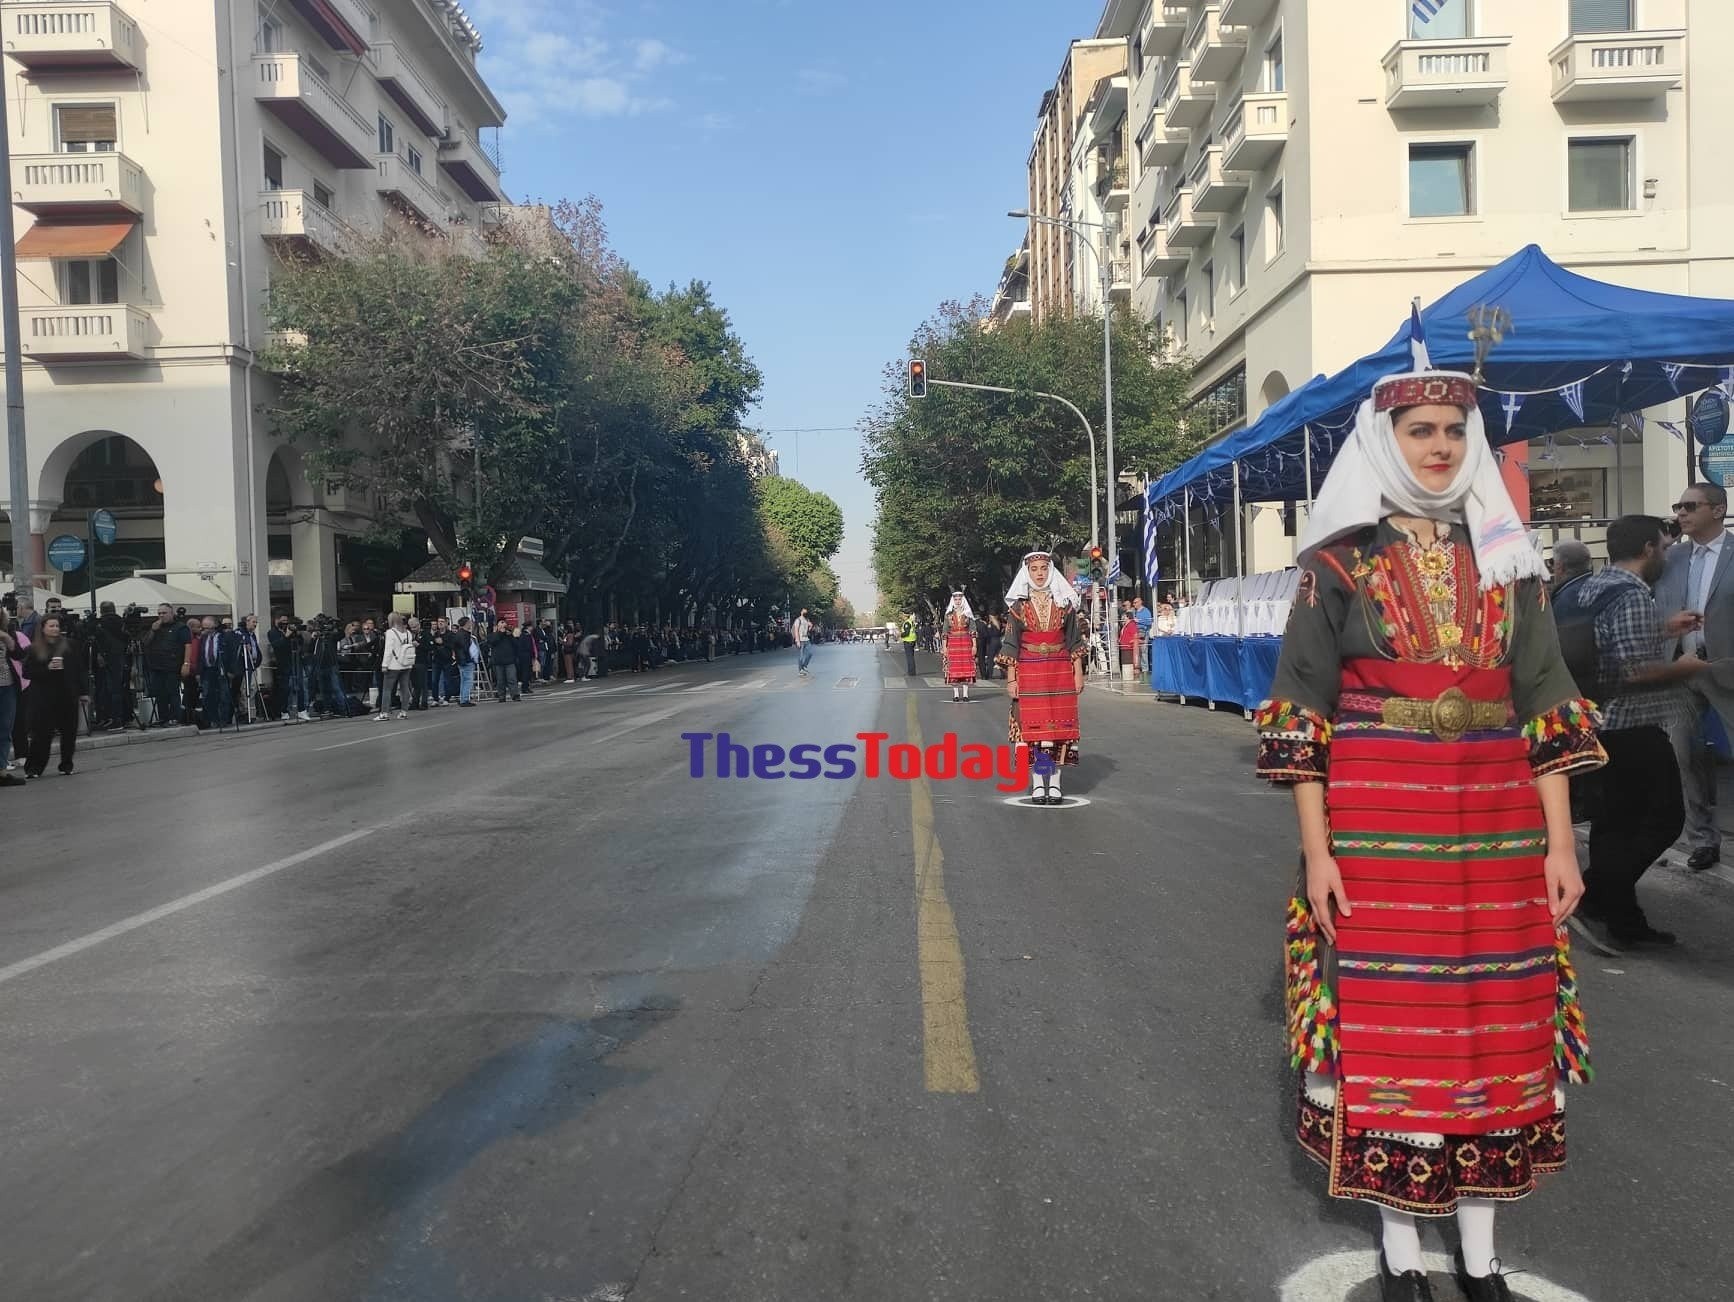 Θεσσαλονίκη: Ολοκληρώθηκε η μαθητική παρέλαση